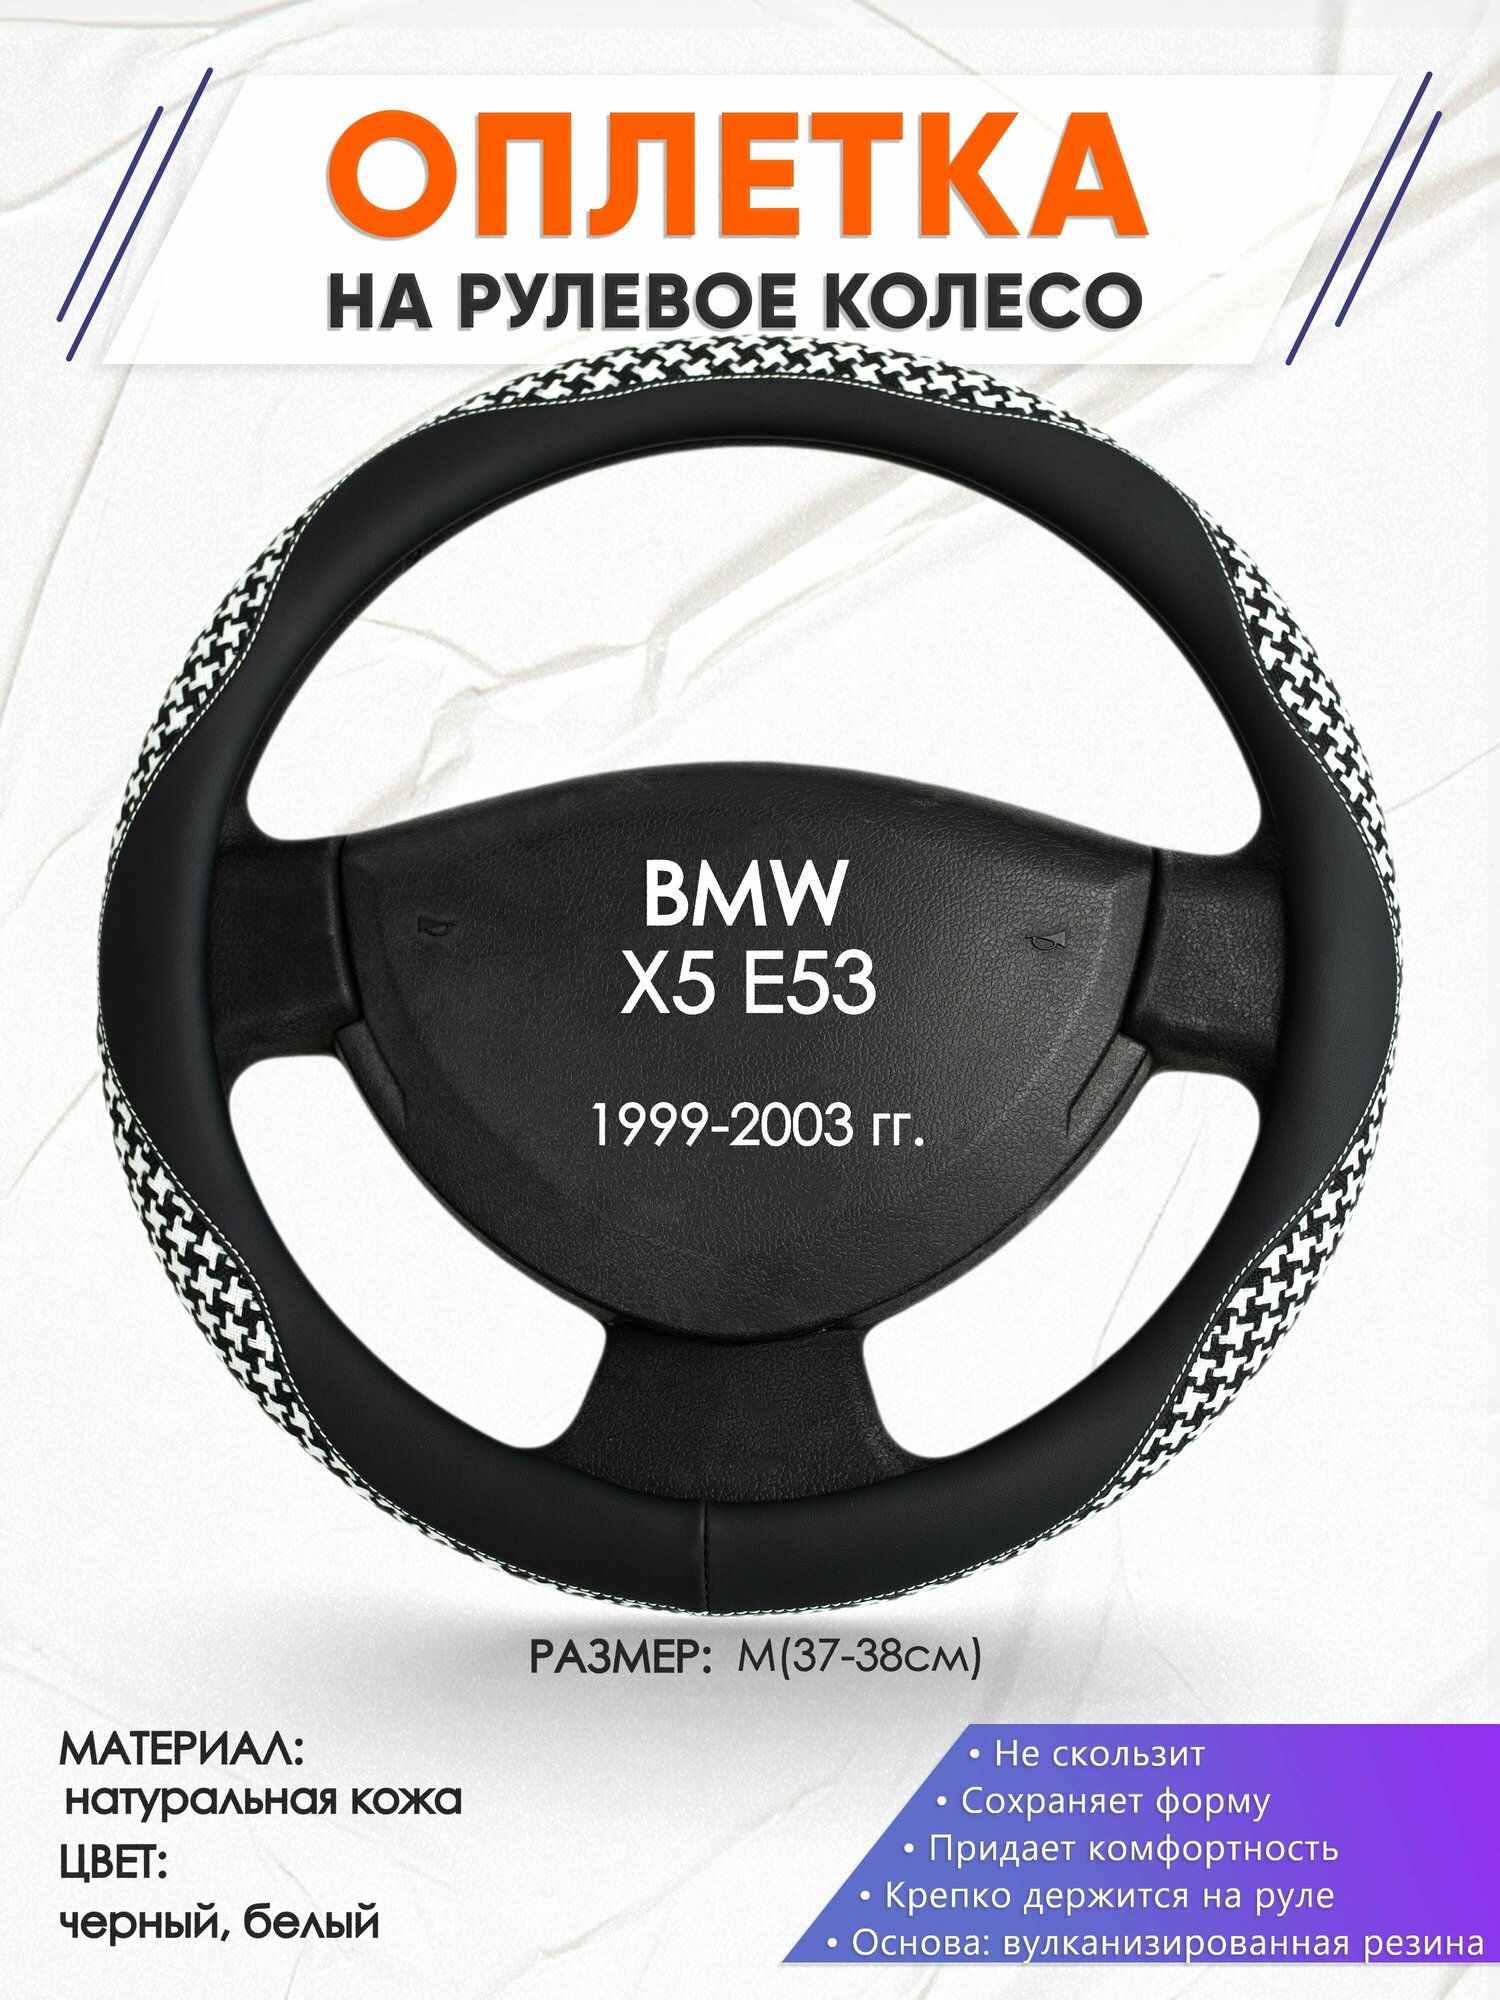 Оплетка наруль для BMW X5 E53(Бмв икс 5 е70) 1999-2003 годов выпуска, размер M(37-38см), Натуральная кожа 21